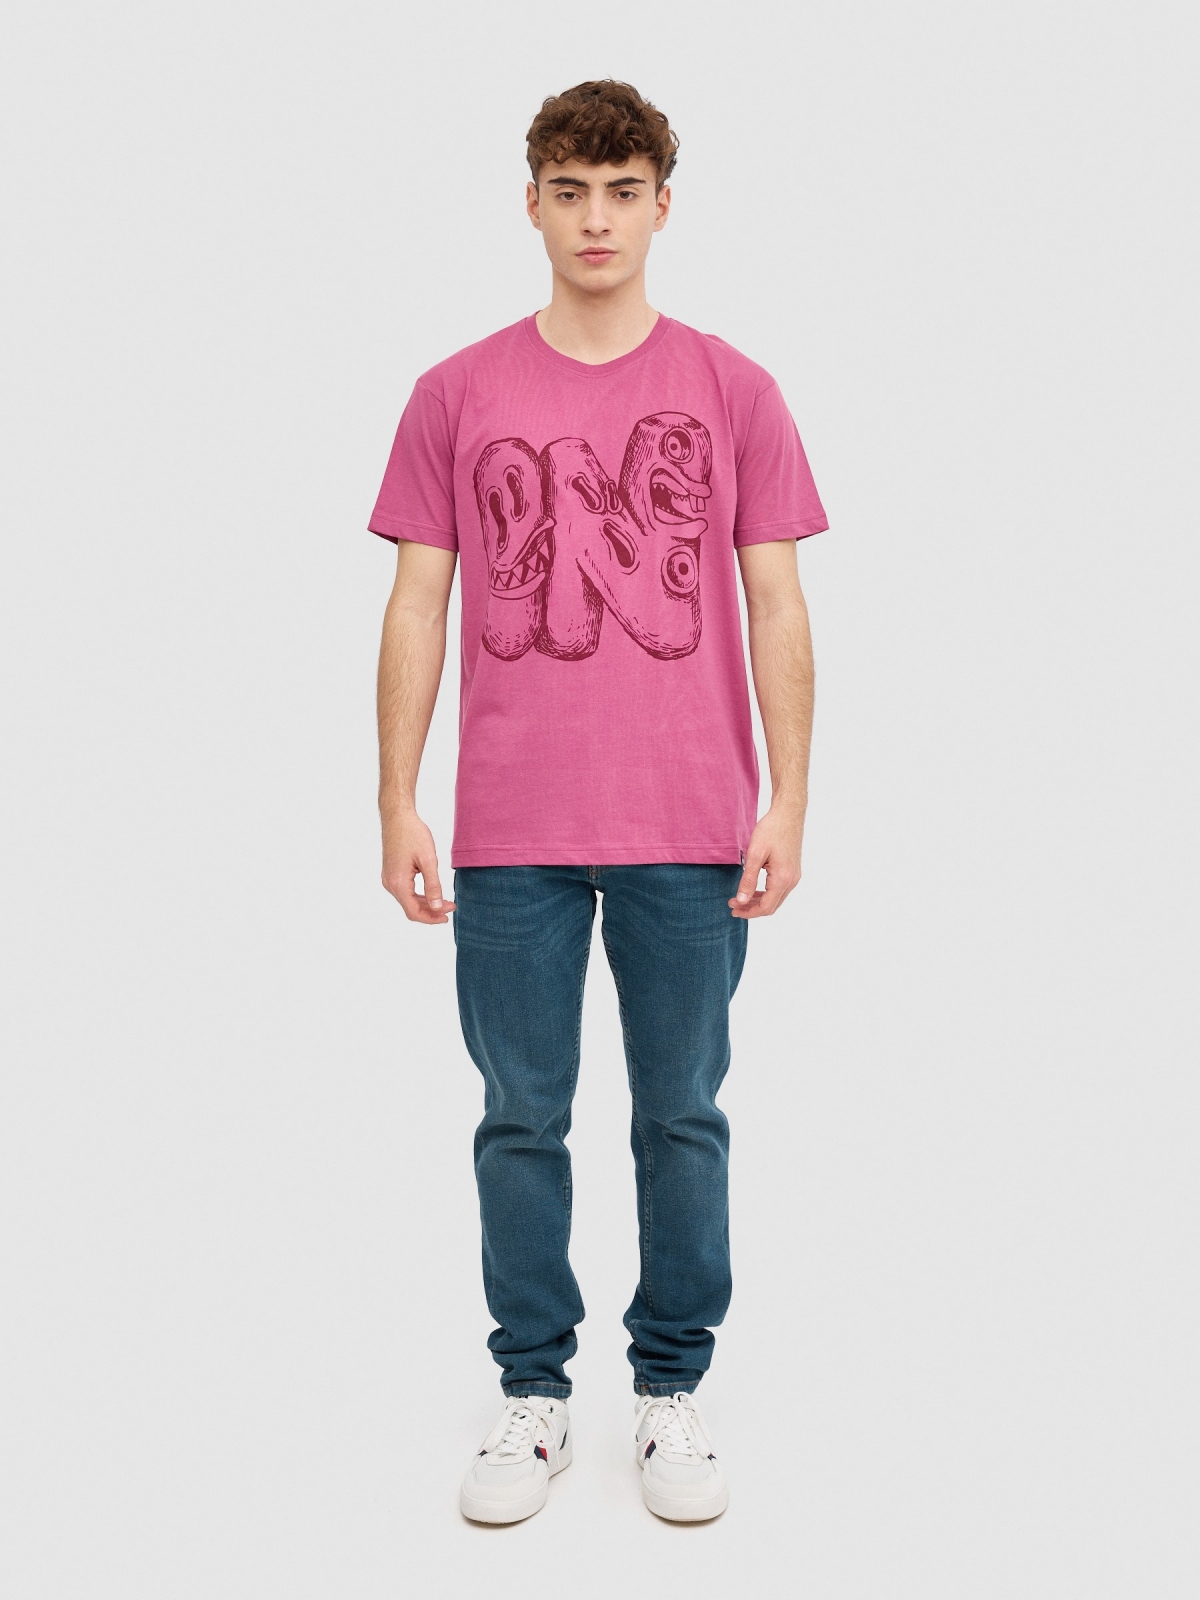 T-shirt Monster violeta vista geral frontal